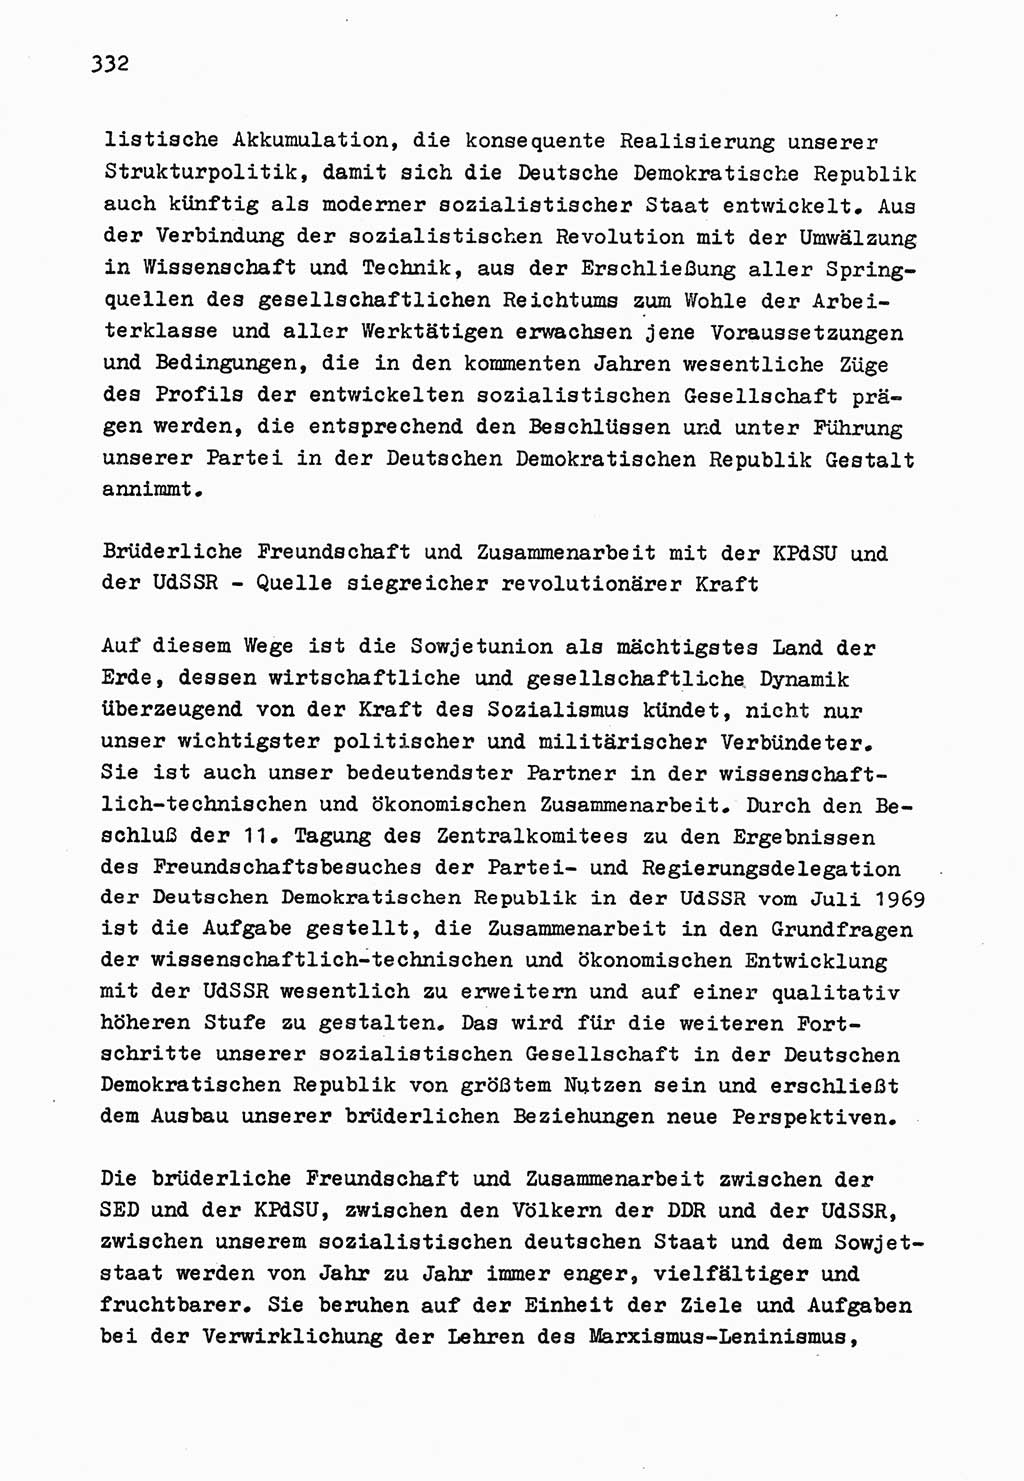 Zu Fragen der Parteiarbeit [Sozialistische Einheitspartei Deutschlands (SED) Deutsche Demokratische Republik (DDR)] 1979, Seite 332 (Fr. PA SED DDR 1979, S. 332)